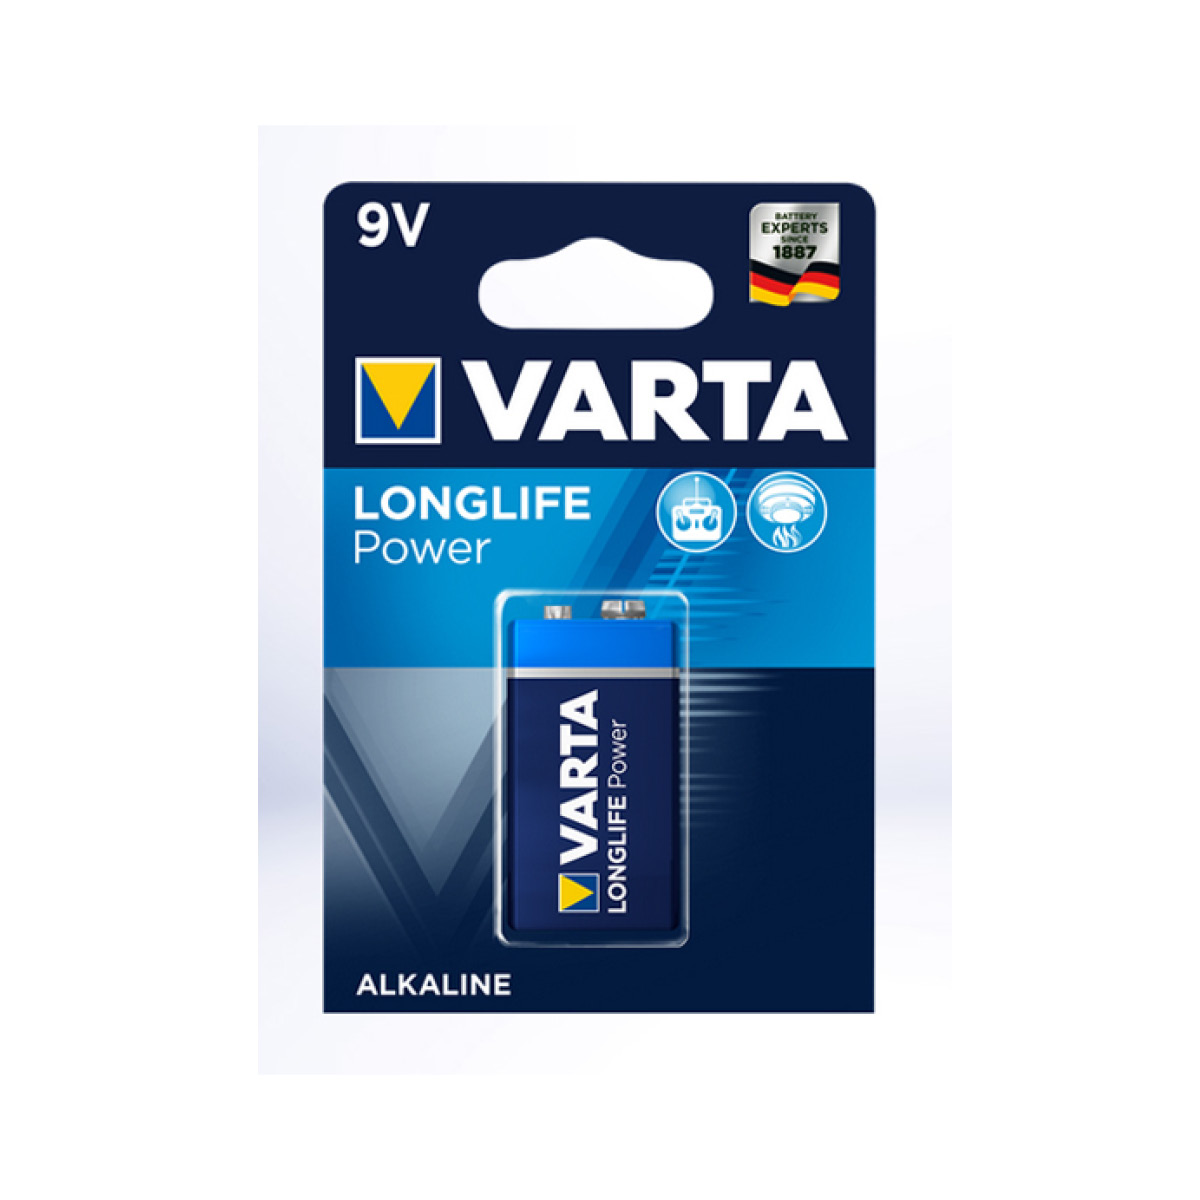 Varta Longlife Power 9V Block 6LR61 Batterie